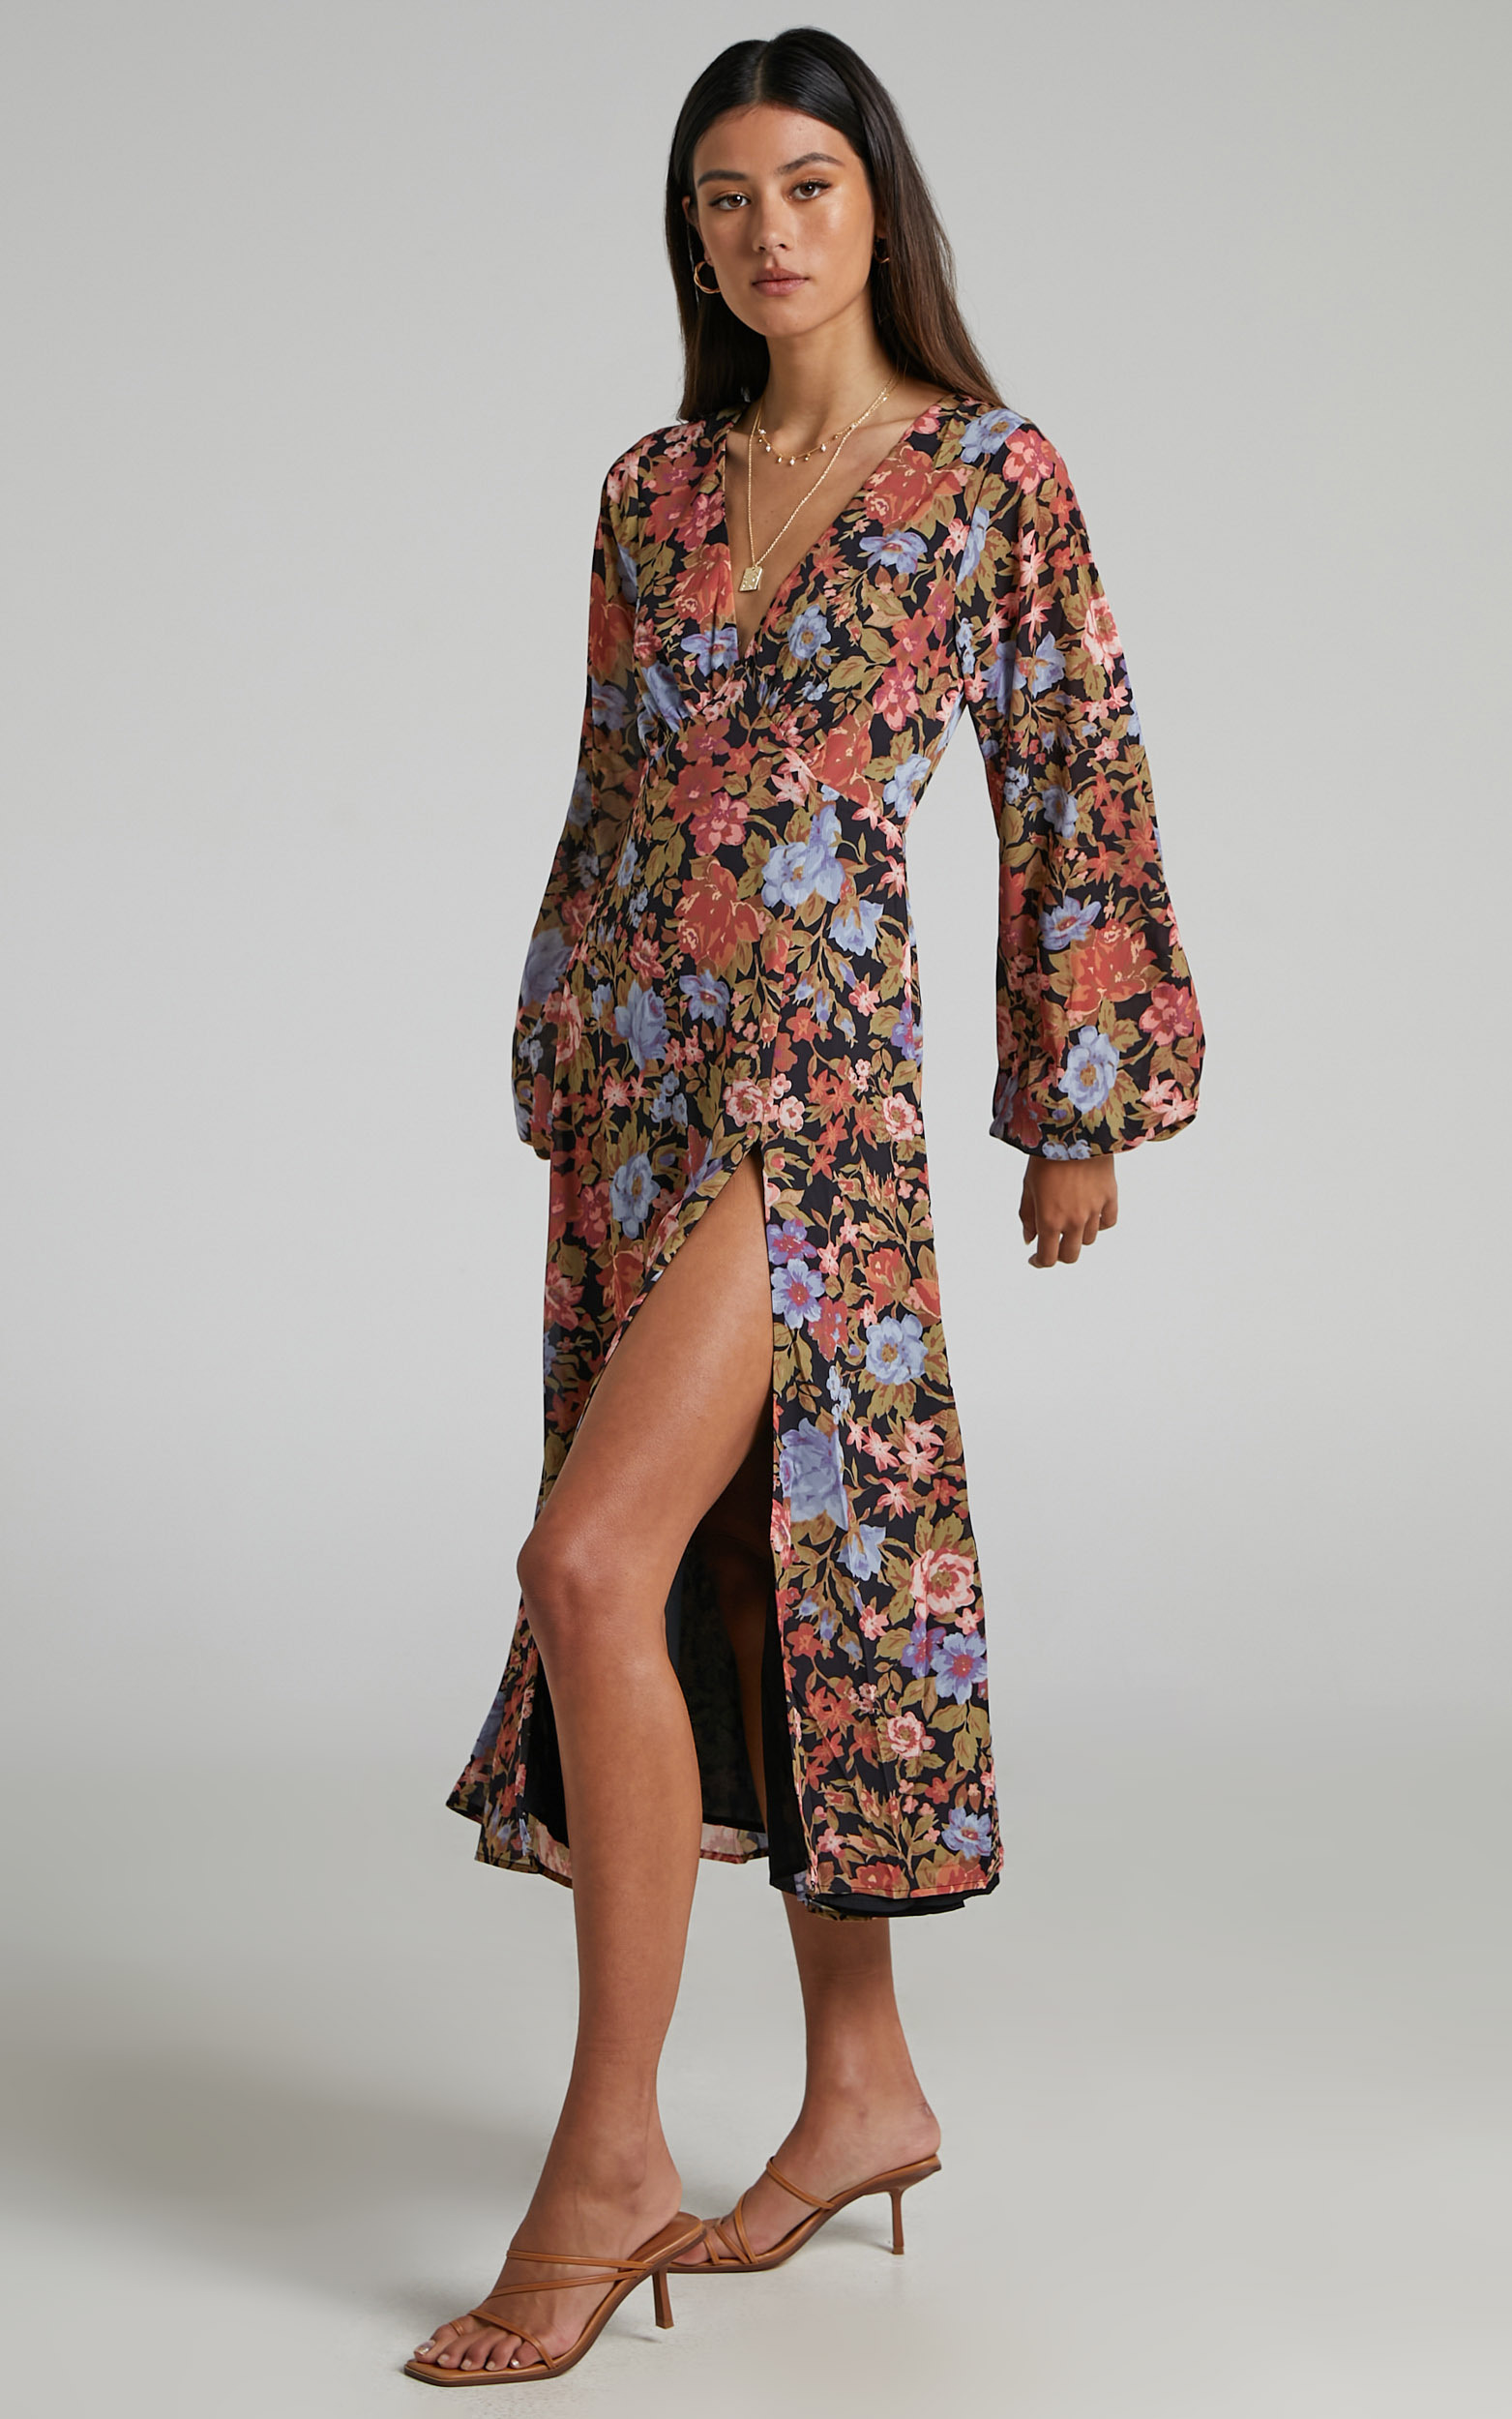 Henny Long Sleeve Split Midi Dress in Dusk Floral - 06, BLK1, hi-res image number null